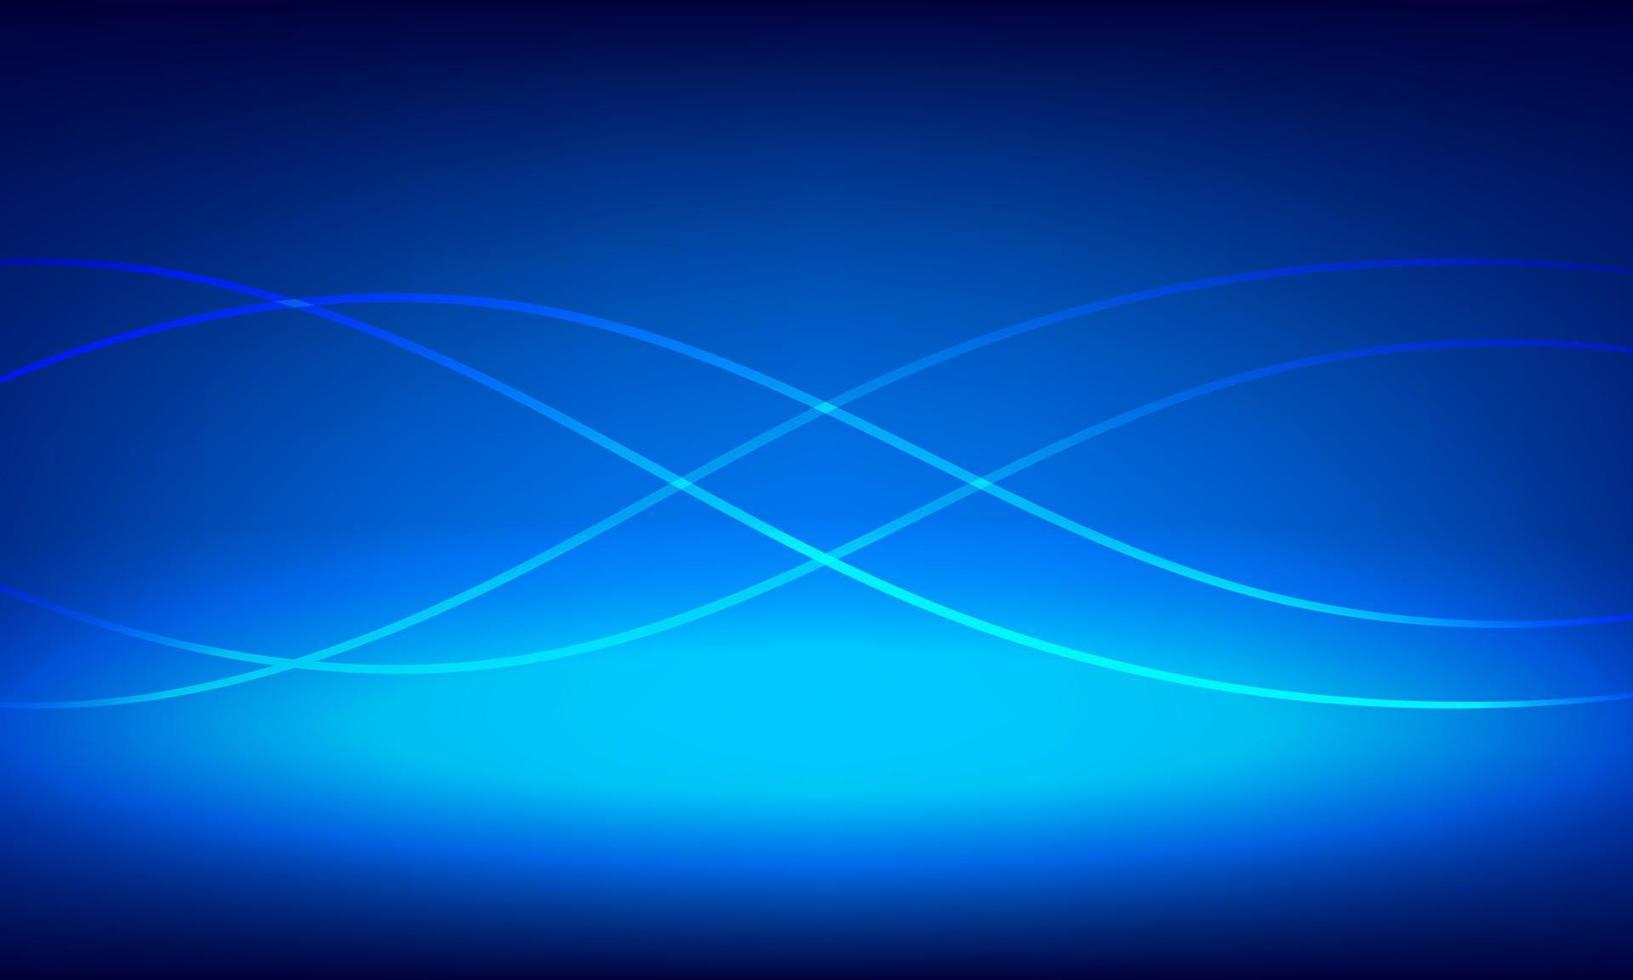 ilustração vetorial design conceito de tecnologia digital. modelo de linhas onduladas brilhantes com fundo azul. vetor